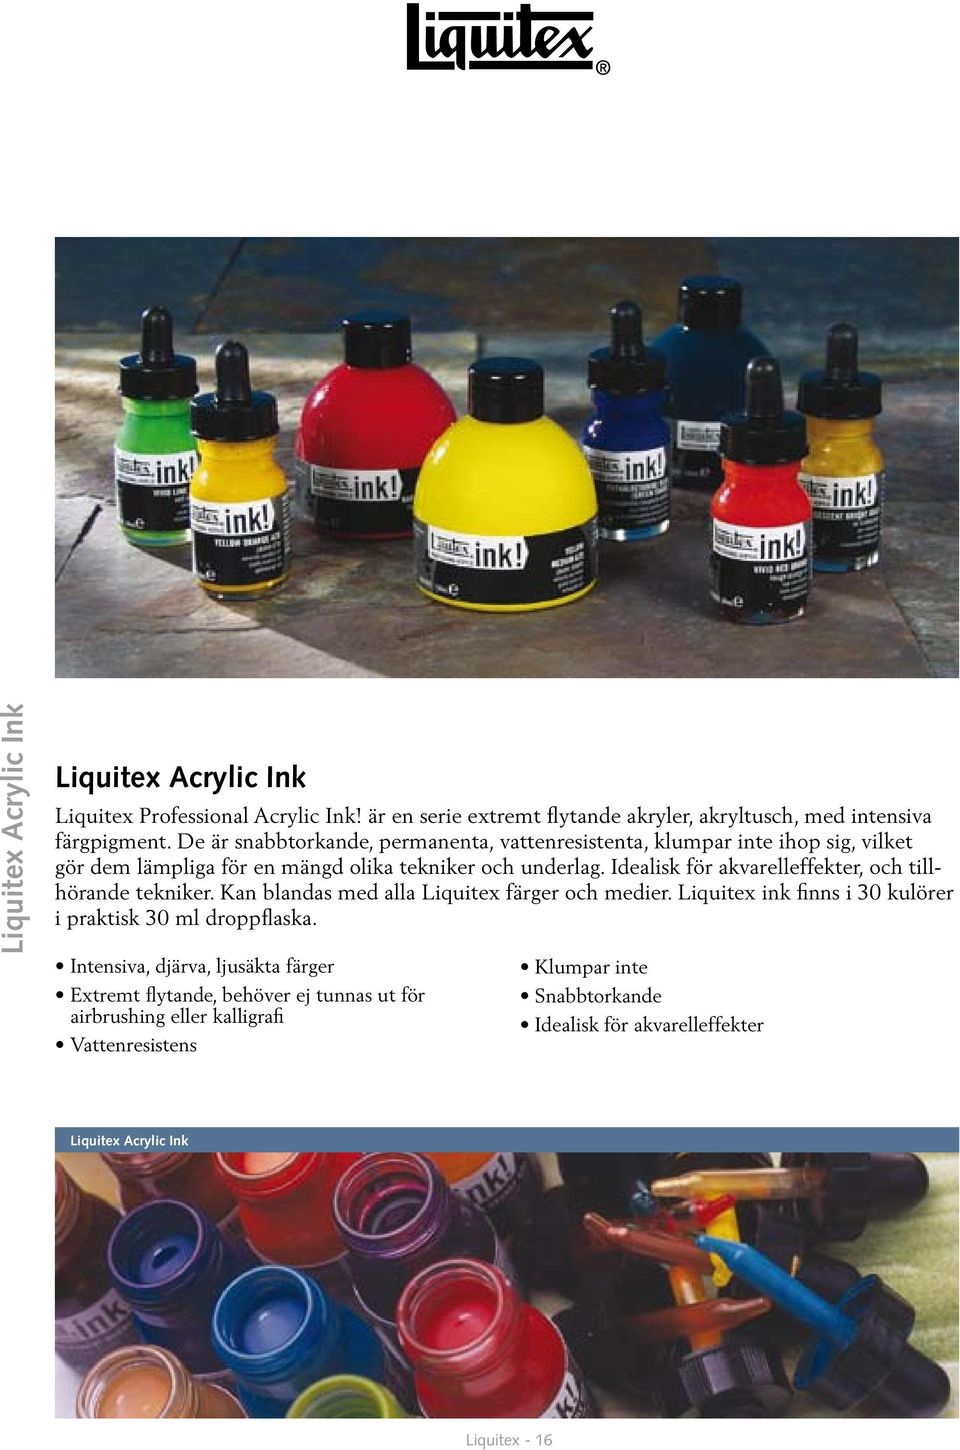 Idealisk för akvarelleffekter, och tillhörande tekniker. Kan blandas med alla Liquitex färger och medier. Liquitex ink finns i 30 kulörer i praktisk 30 ml droppflaska.